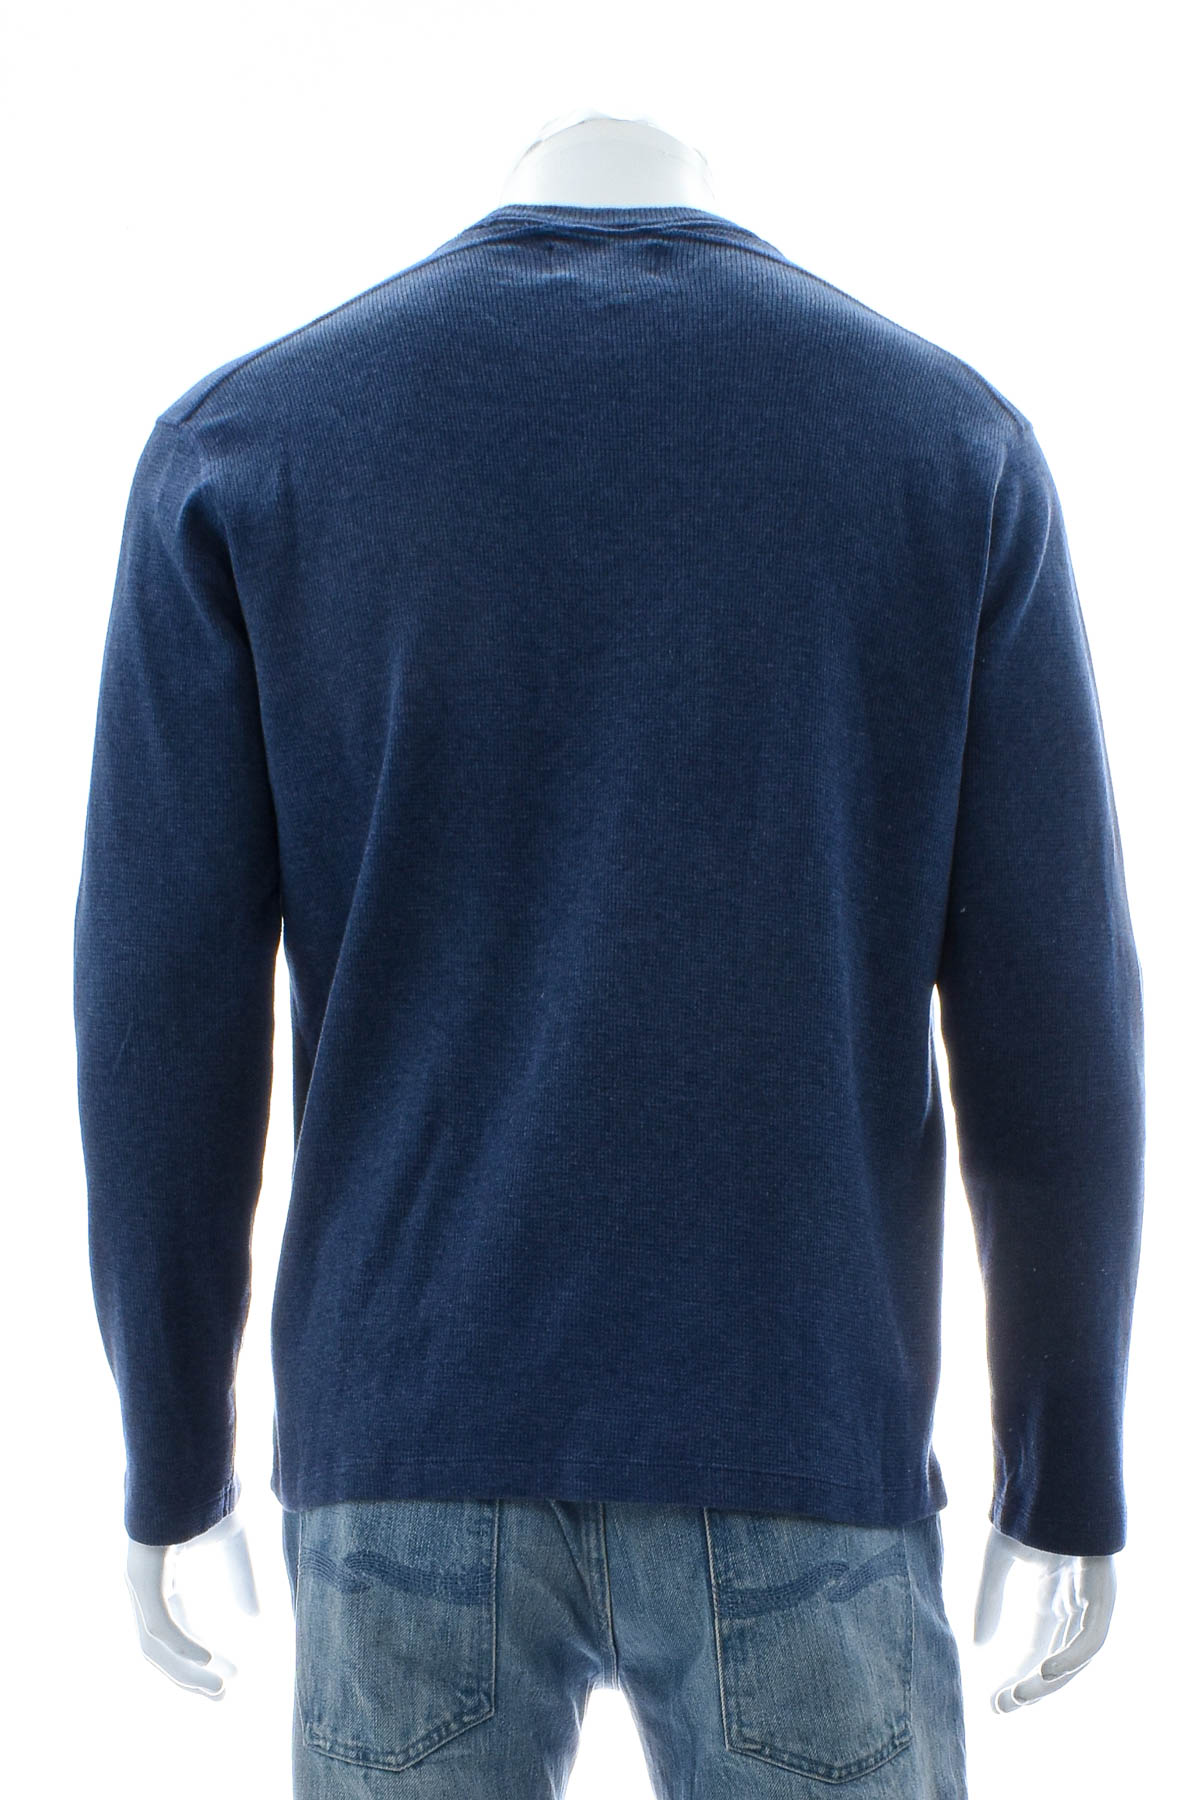 Men's sweater - BONOBOS - 1